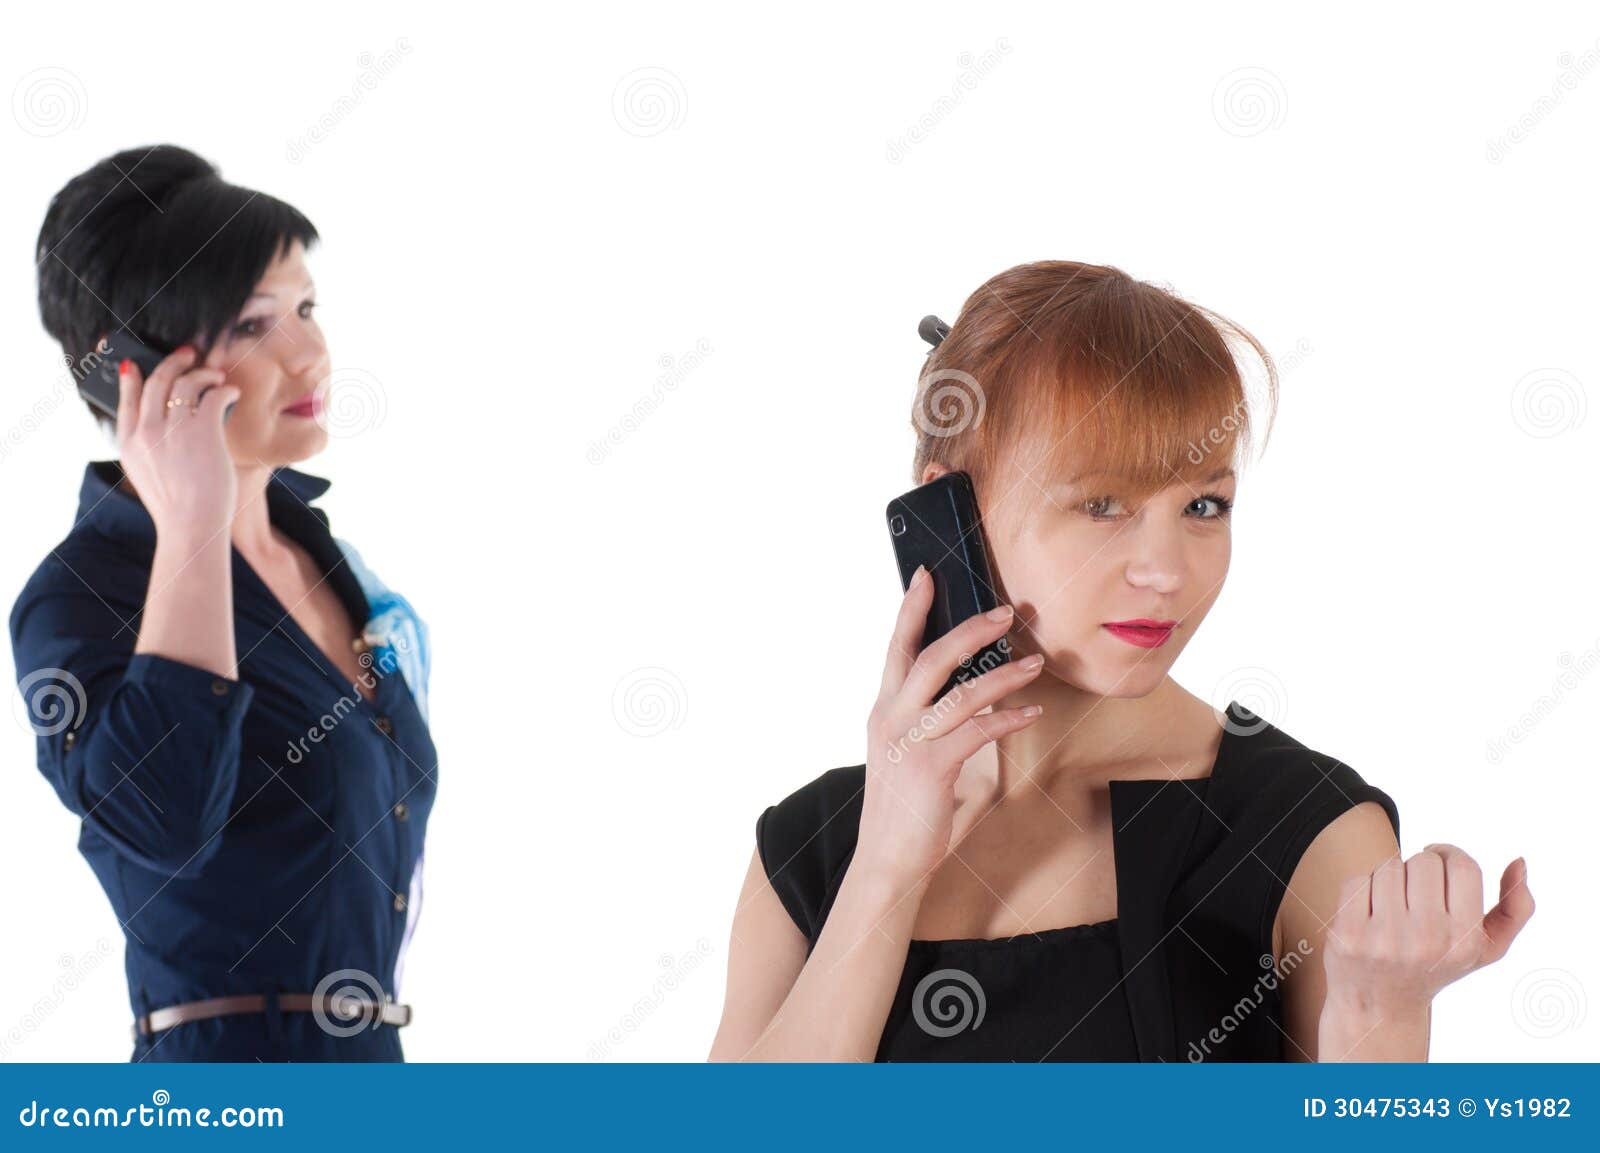 Она разговаривает с подругой по телефону. Две девушки разговаривают по телефону. Две подруги разговаривают по телефону. Подаруиаотелефону. Подружки общаются по телефону.